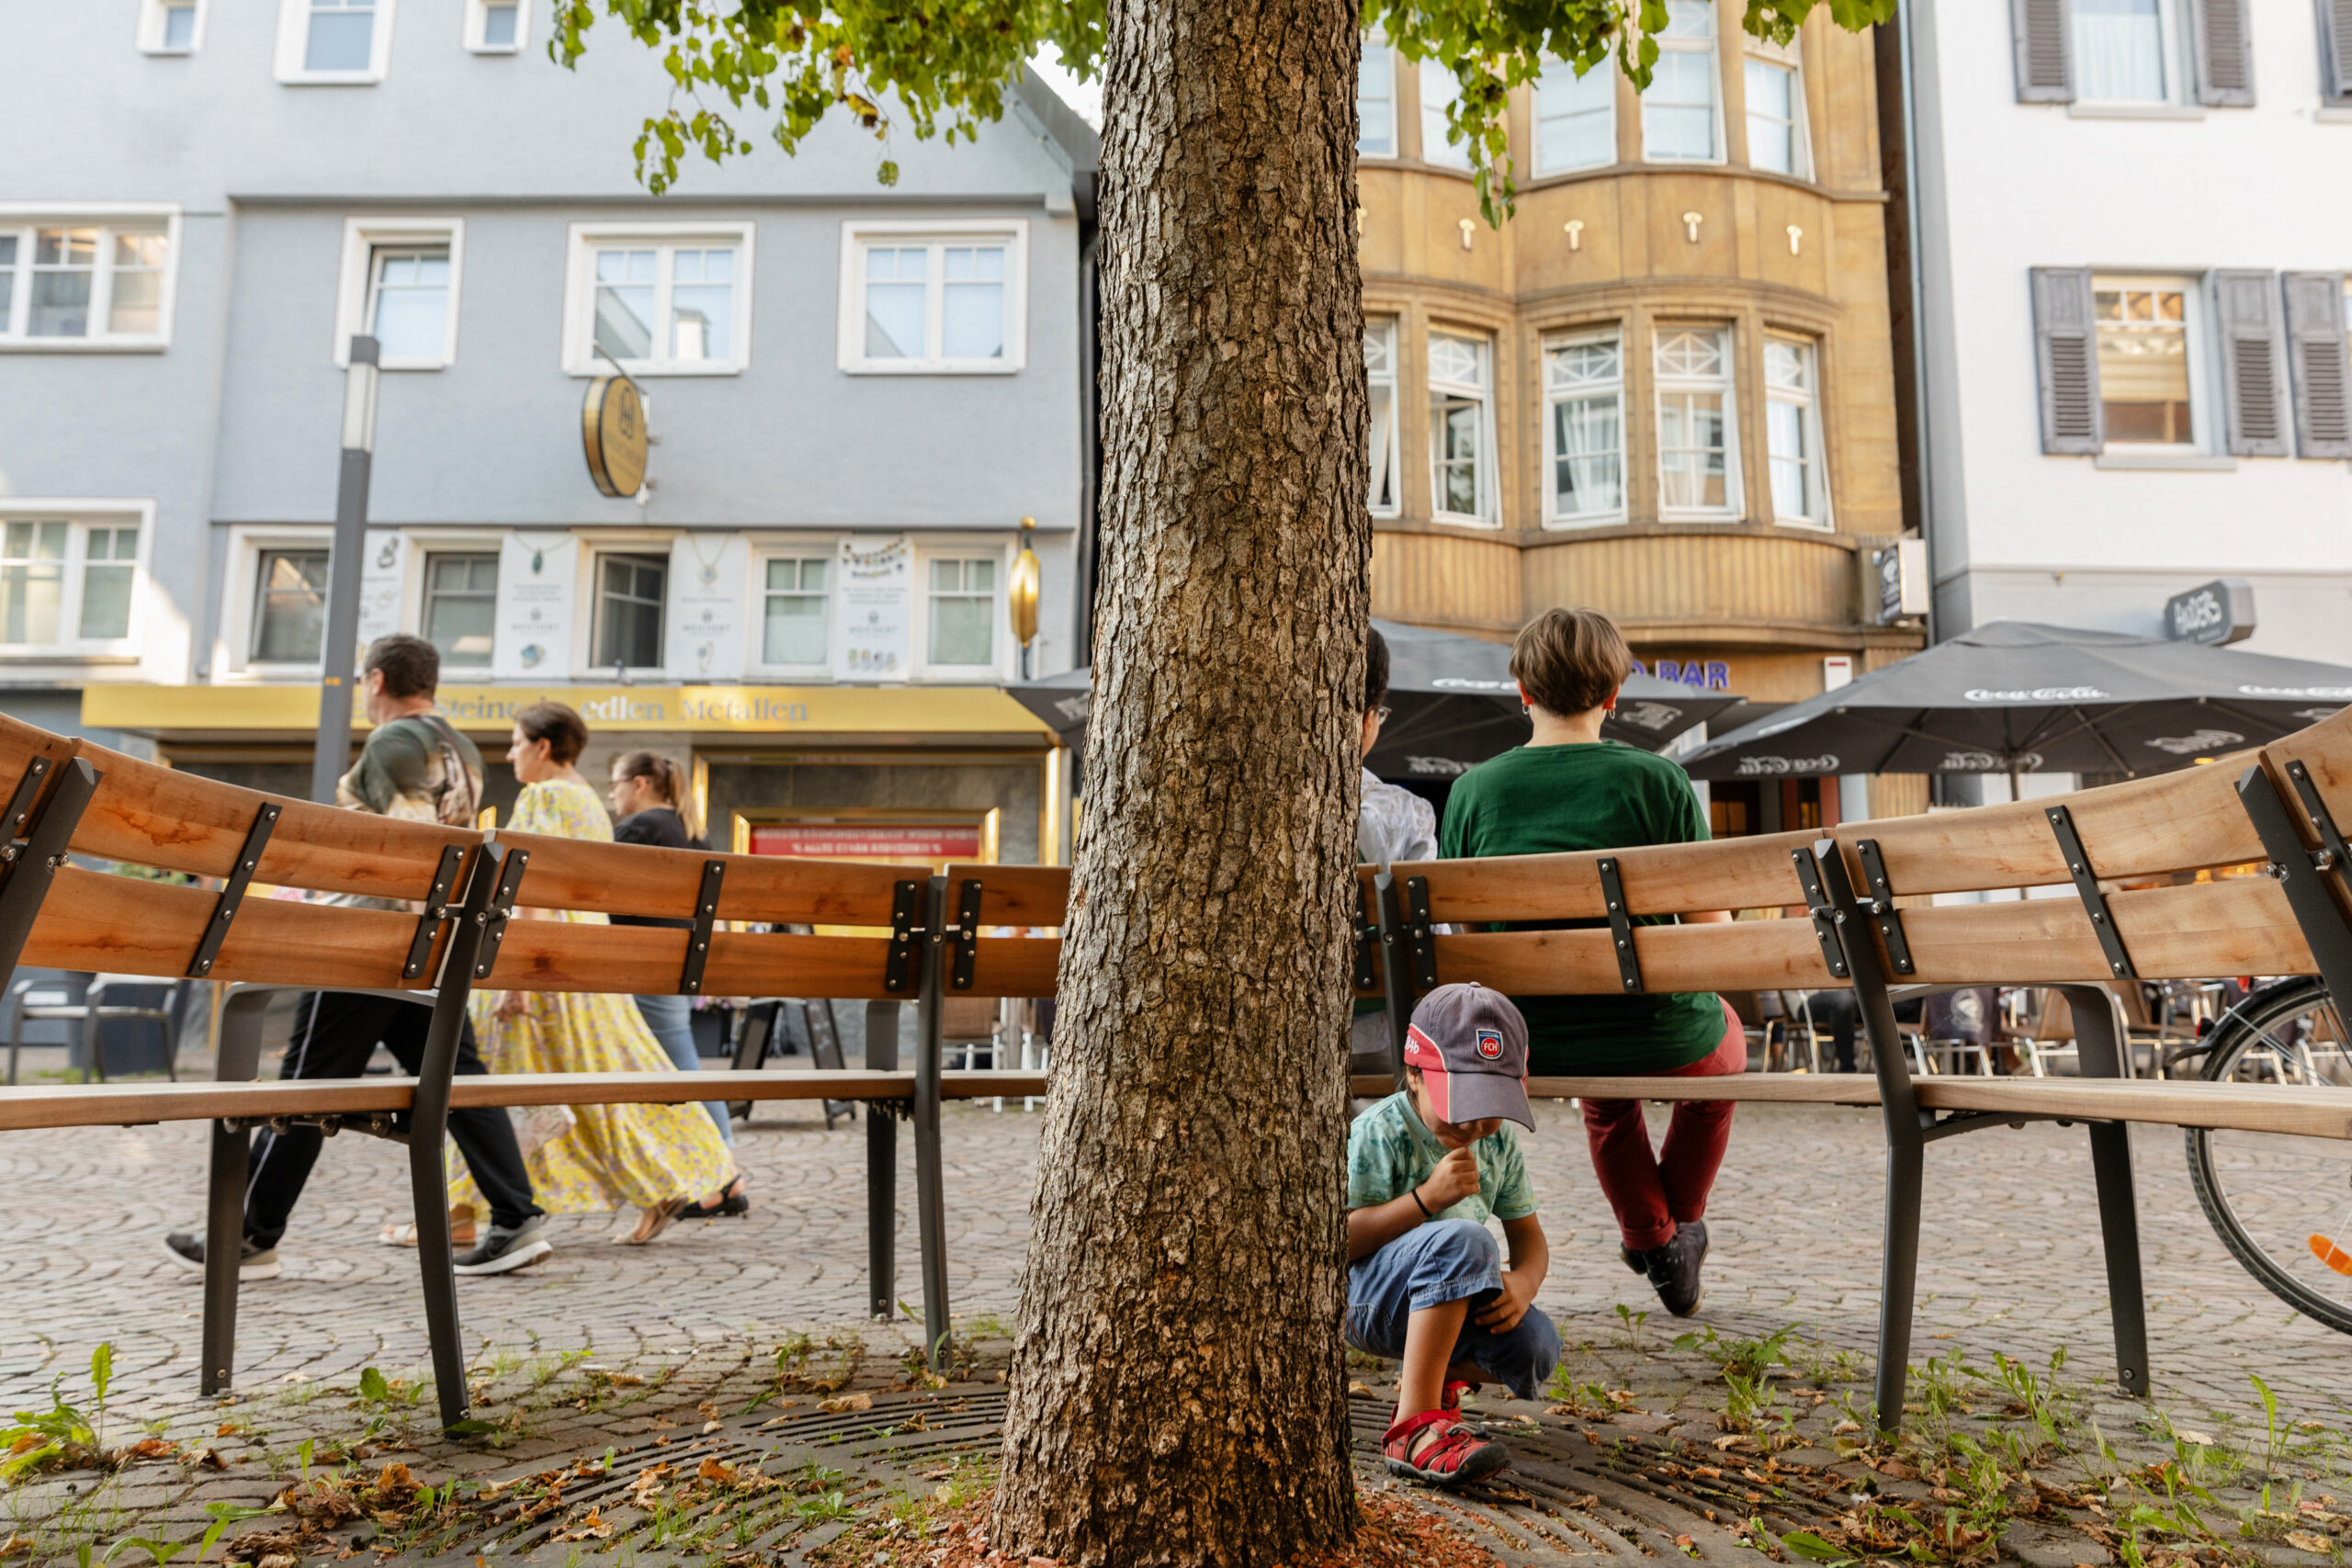 Fotografie einer Rundsitzbank in der Fußgängerzone, im Vordergrund ein Kind an einem Baum spielend